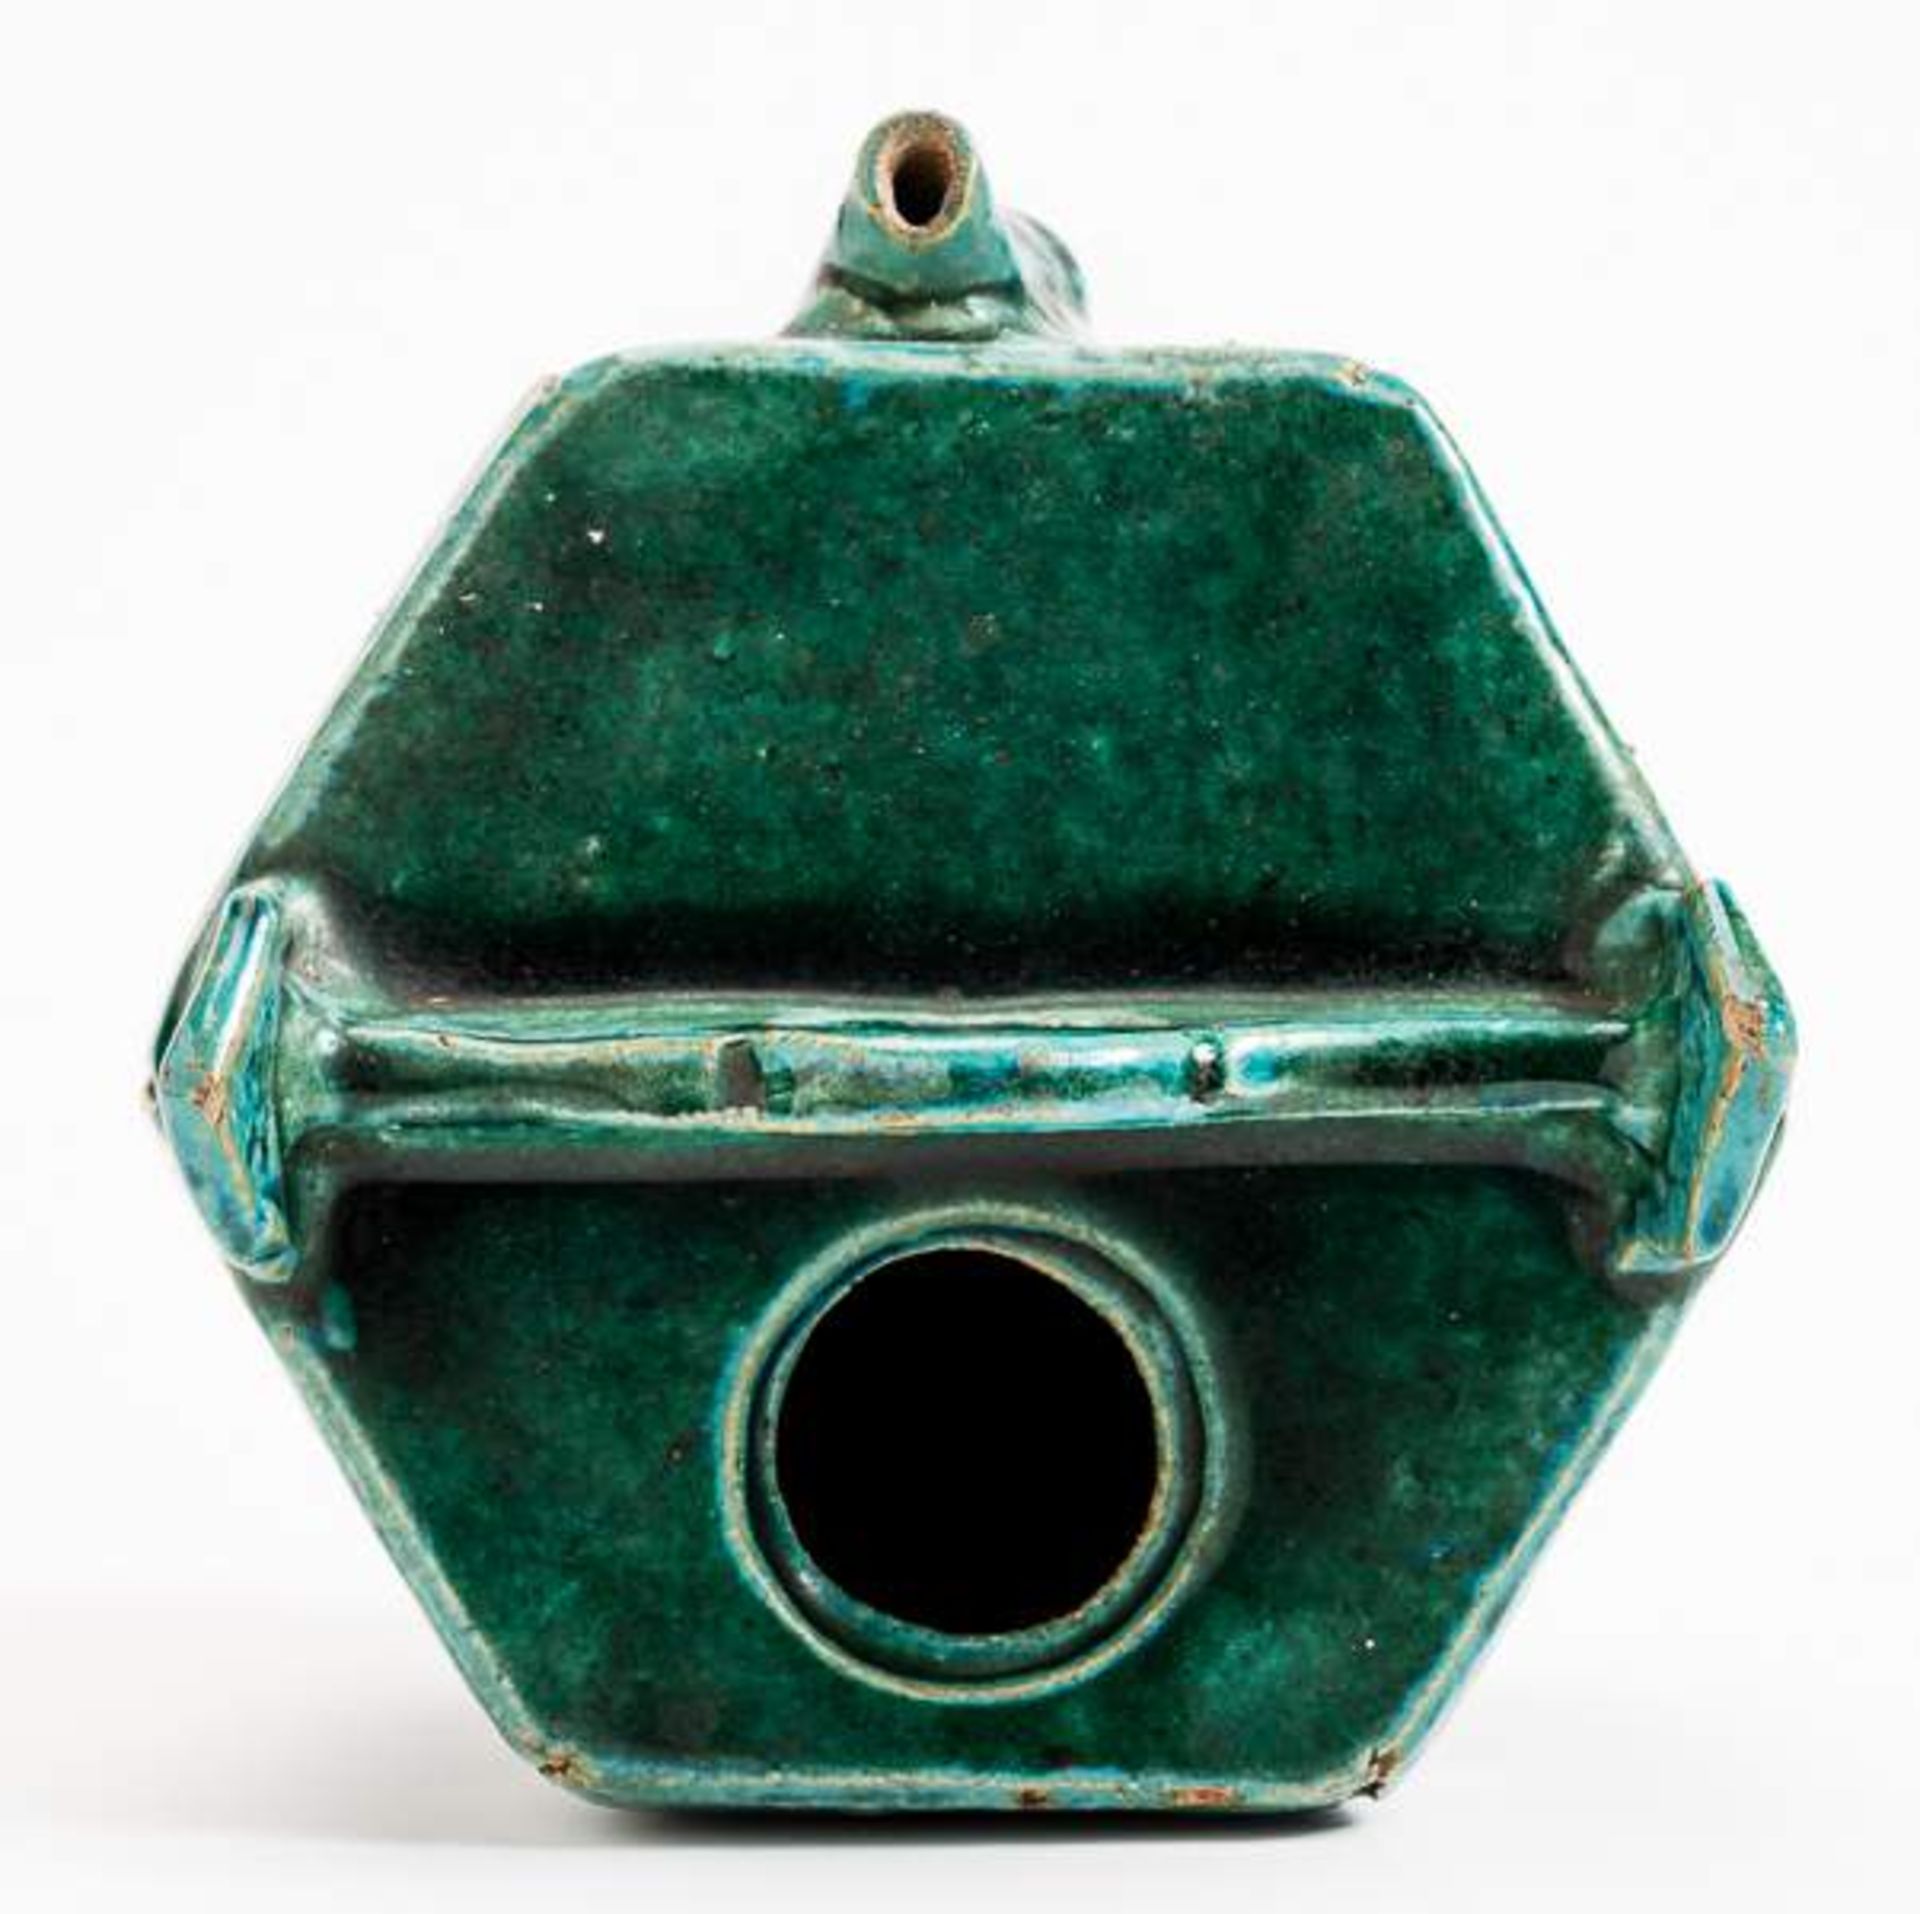 GEFÄSS IN FORM EINES WASSEREIMERS Grün glasierte Keramik. China, Qing, vermutlich 17. Jh. Dieses - Image 14 of 15